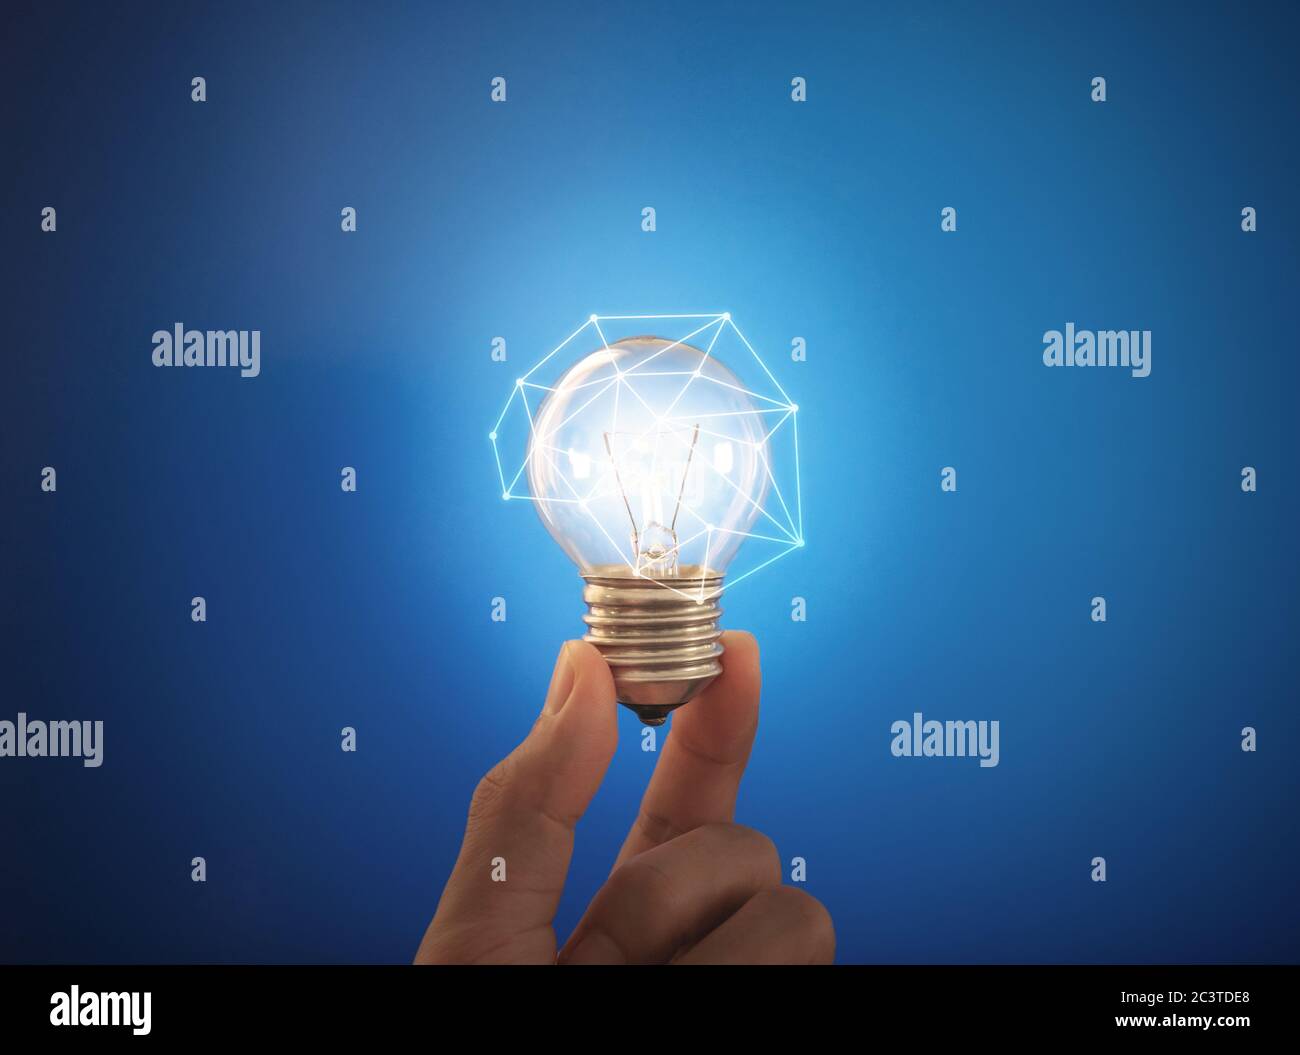 Nuove idee, innovazione, networking e risparmio energetico. Lampada luminosa con supporto manuale Foto Stock